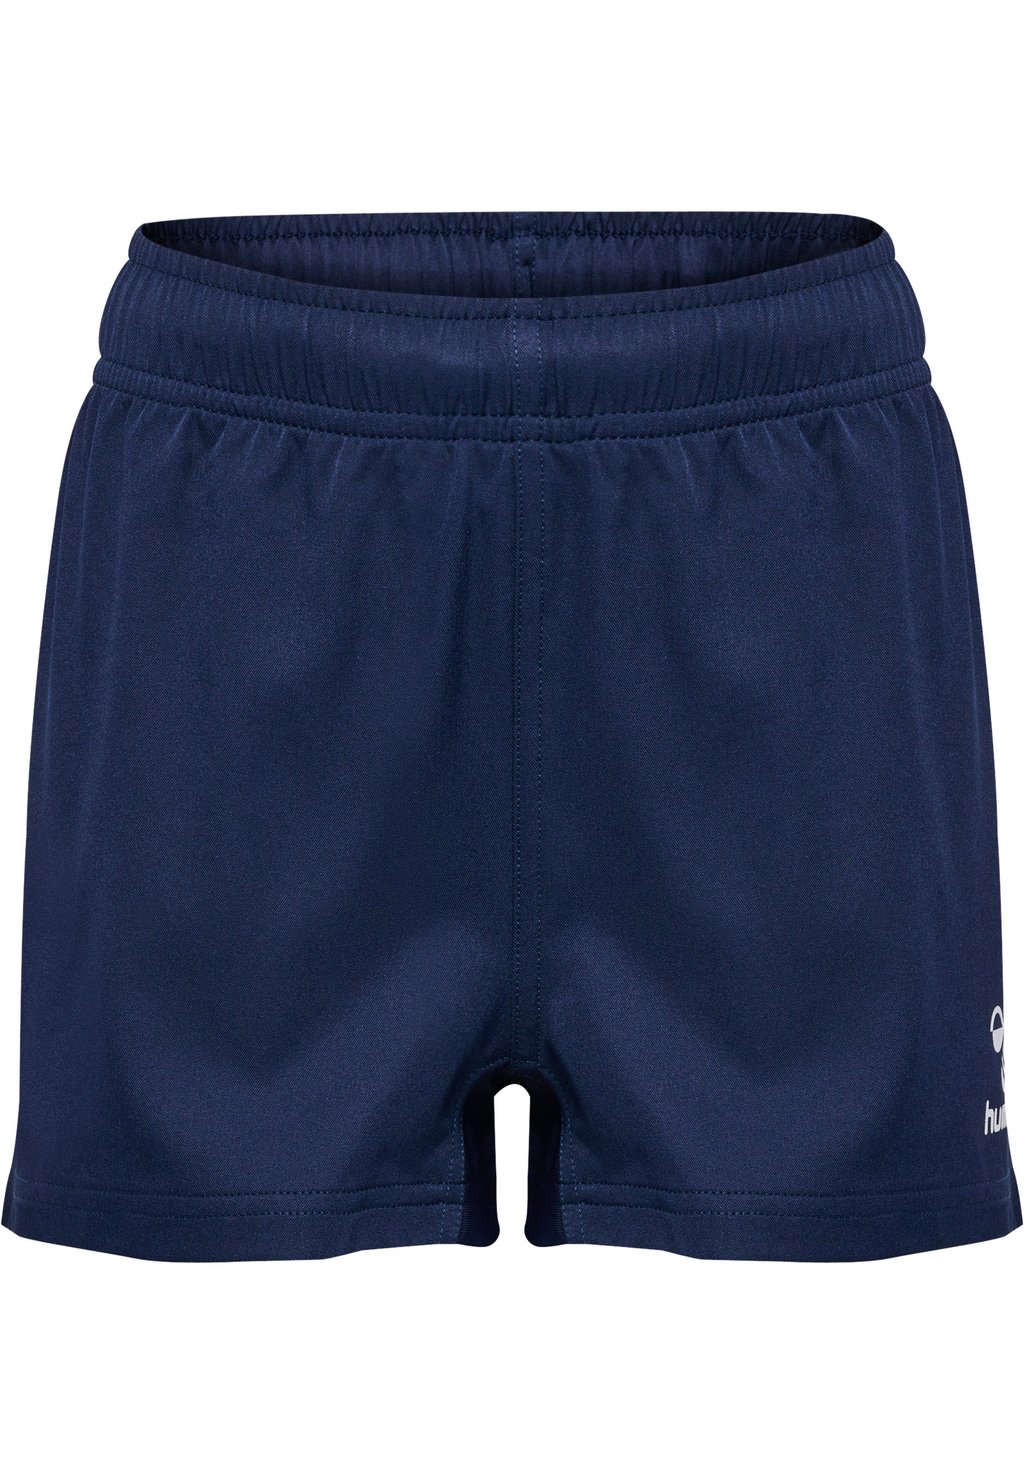 короткие спортивные штаны hummel цвет marine Короткие спортивные брюки RUGBY Hummel, цвет marine